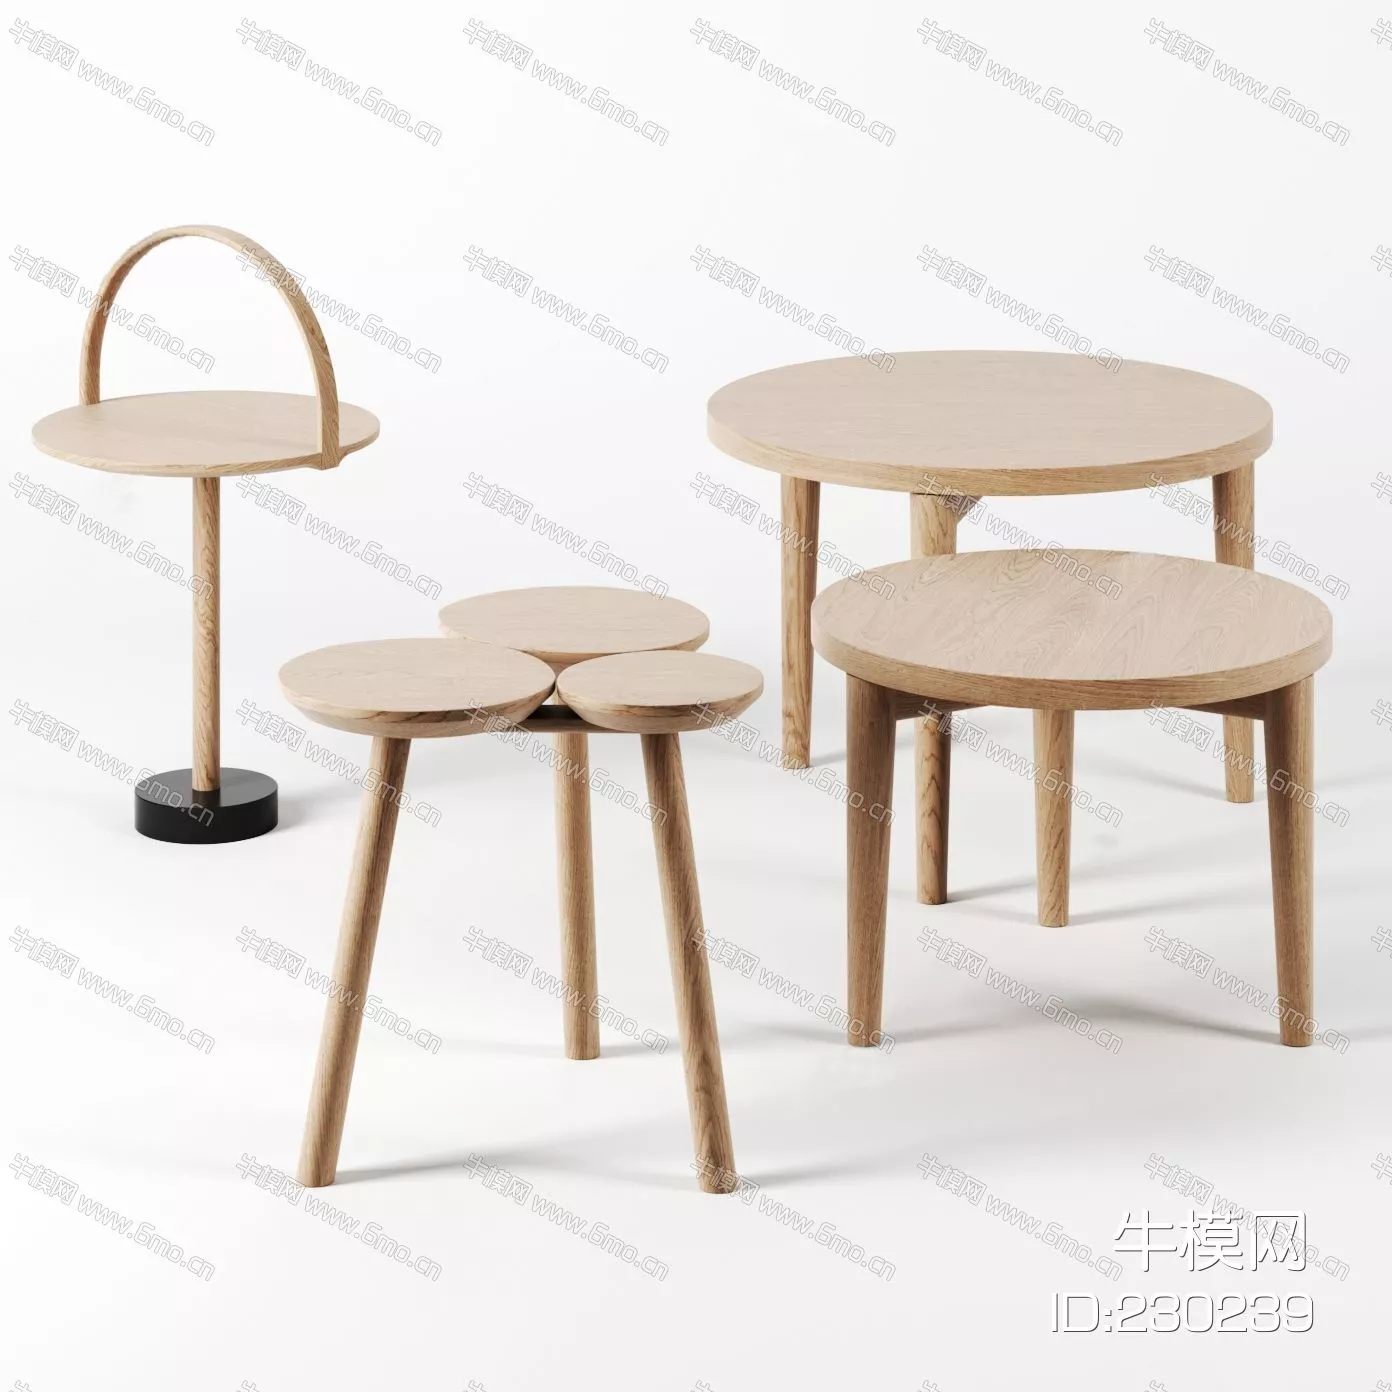 NORDIC SIDE TABLE - SKETCHUP 3D MODEL - ENSCAPE - 230239